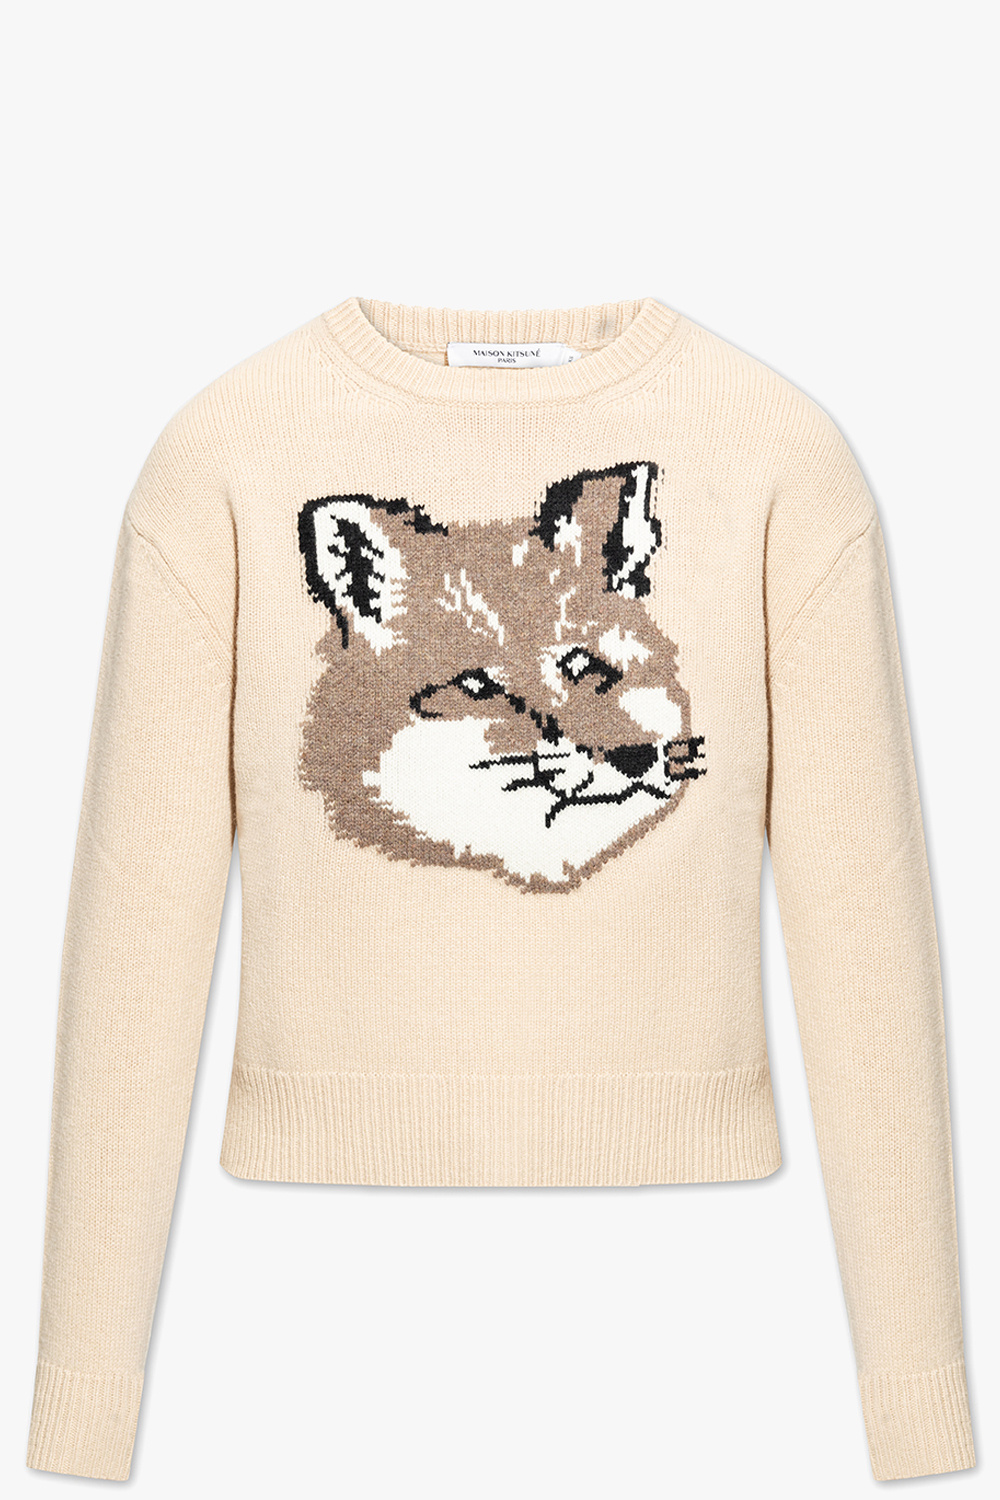 Maison Kitsune Wool sweater